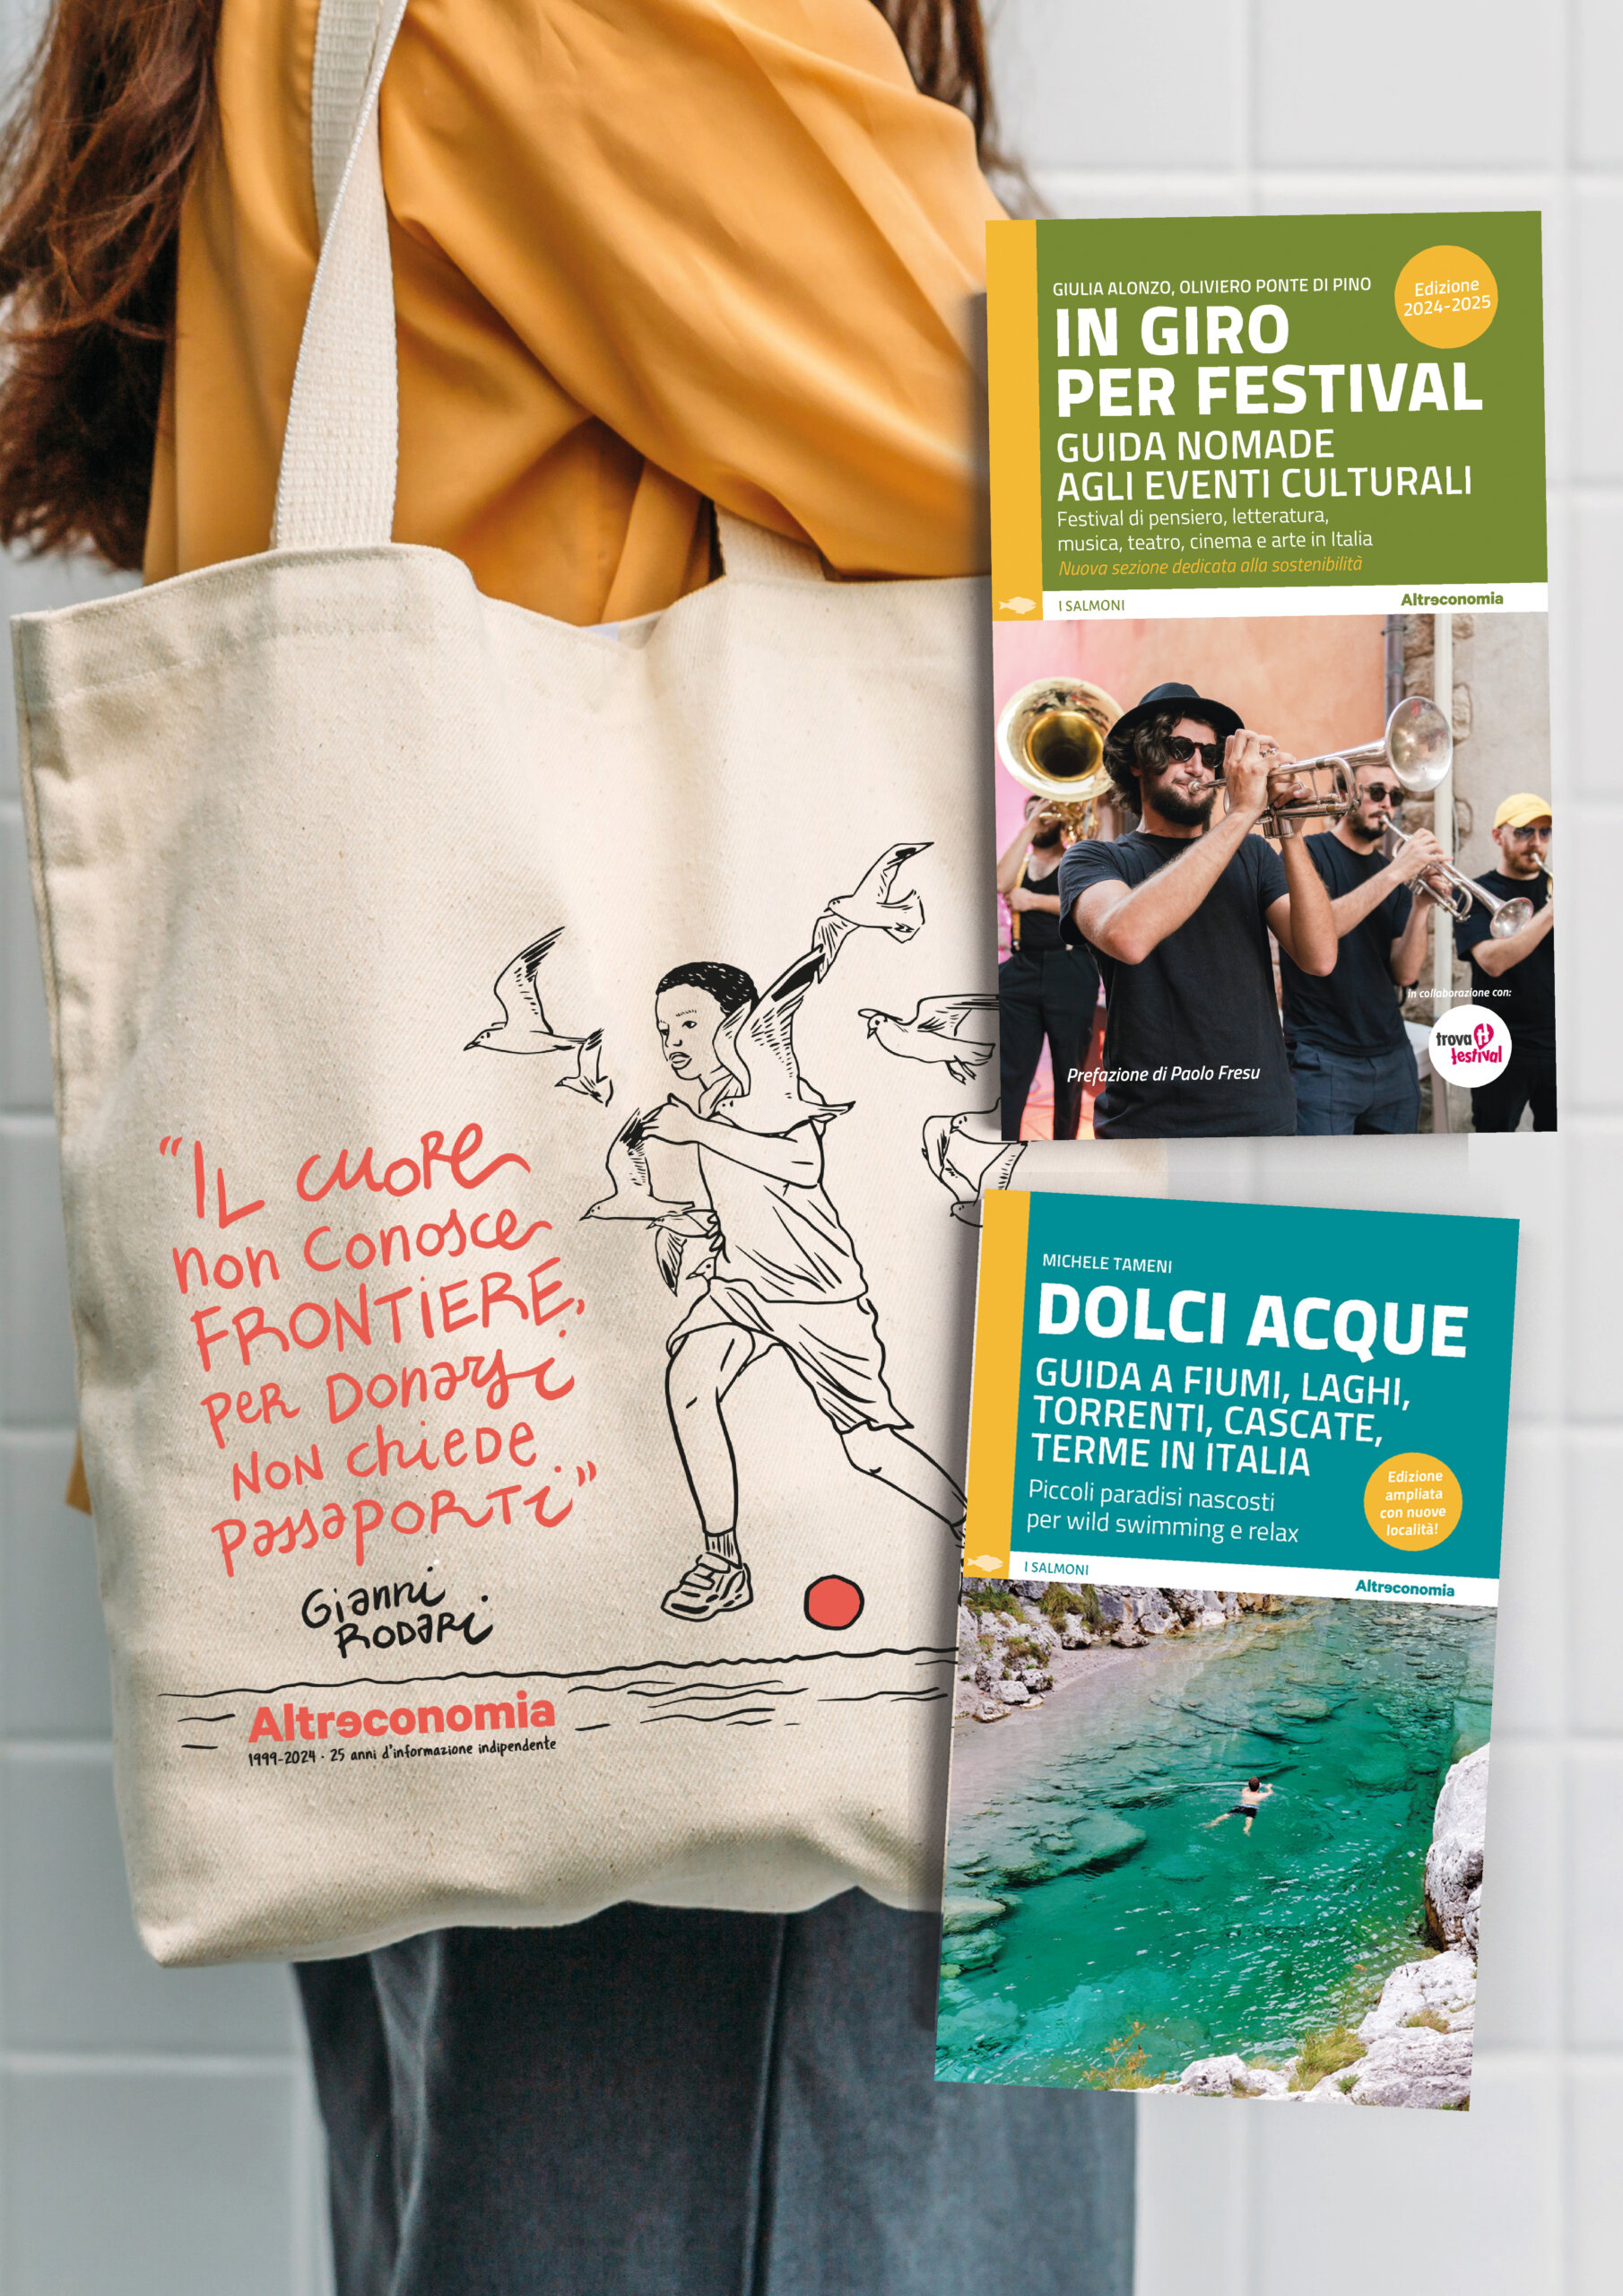 Fotografia della shopper di Altreconomia con le copertine di due guide turistiche: In giro per festival e Dolci acque.